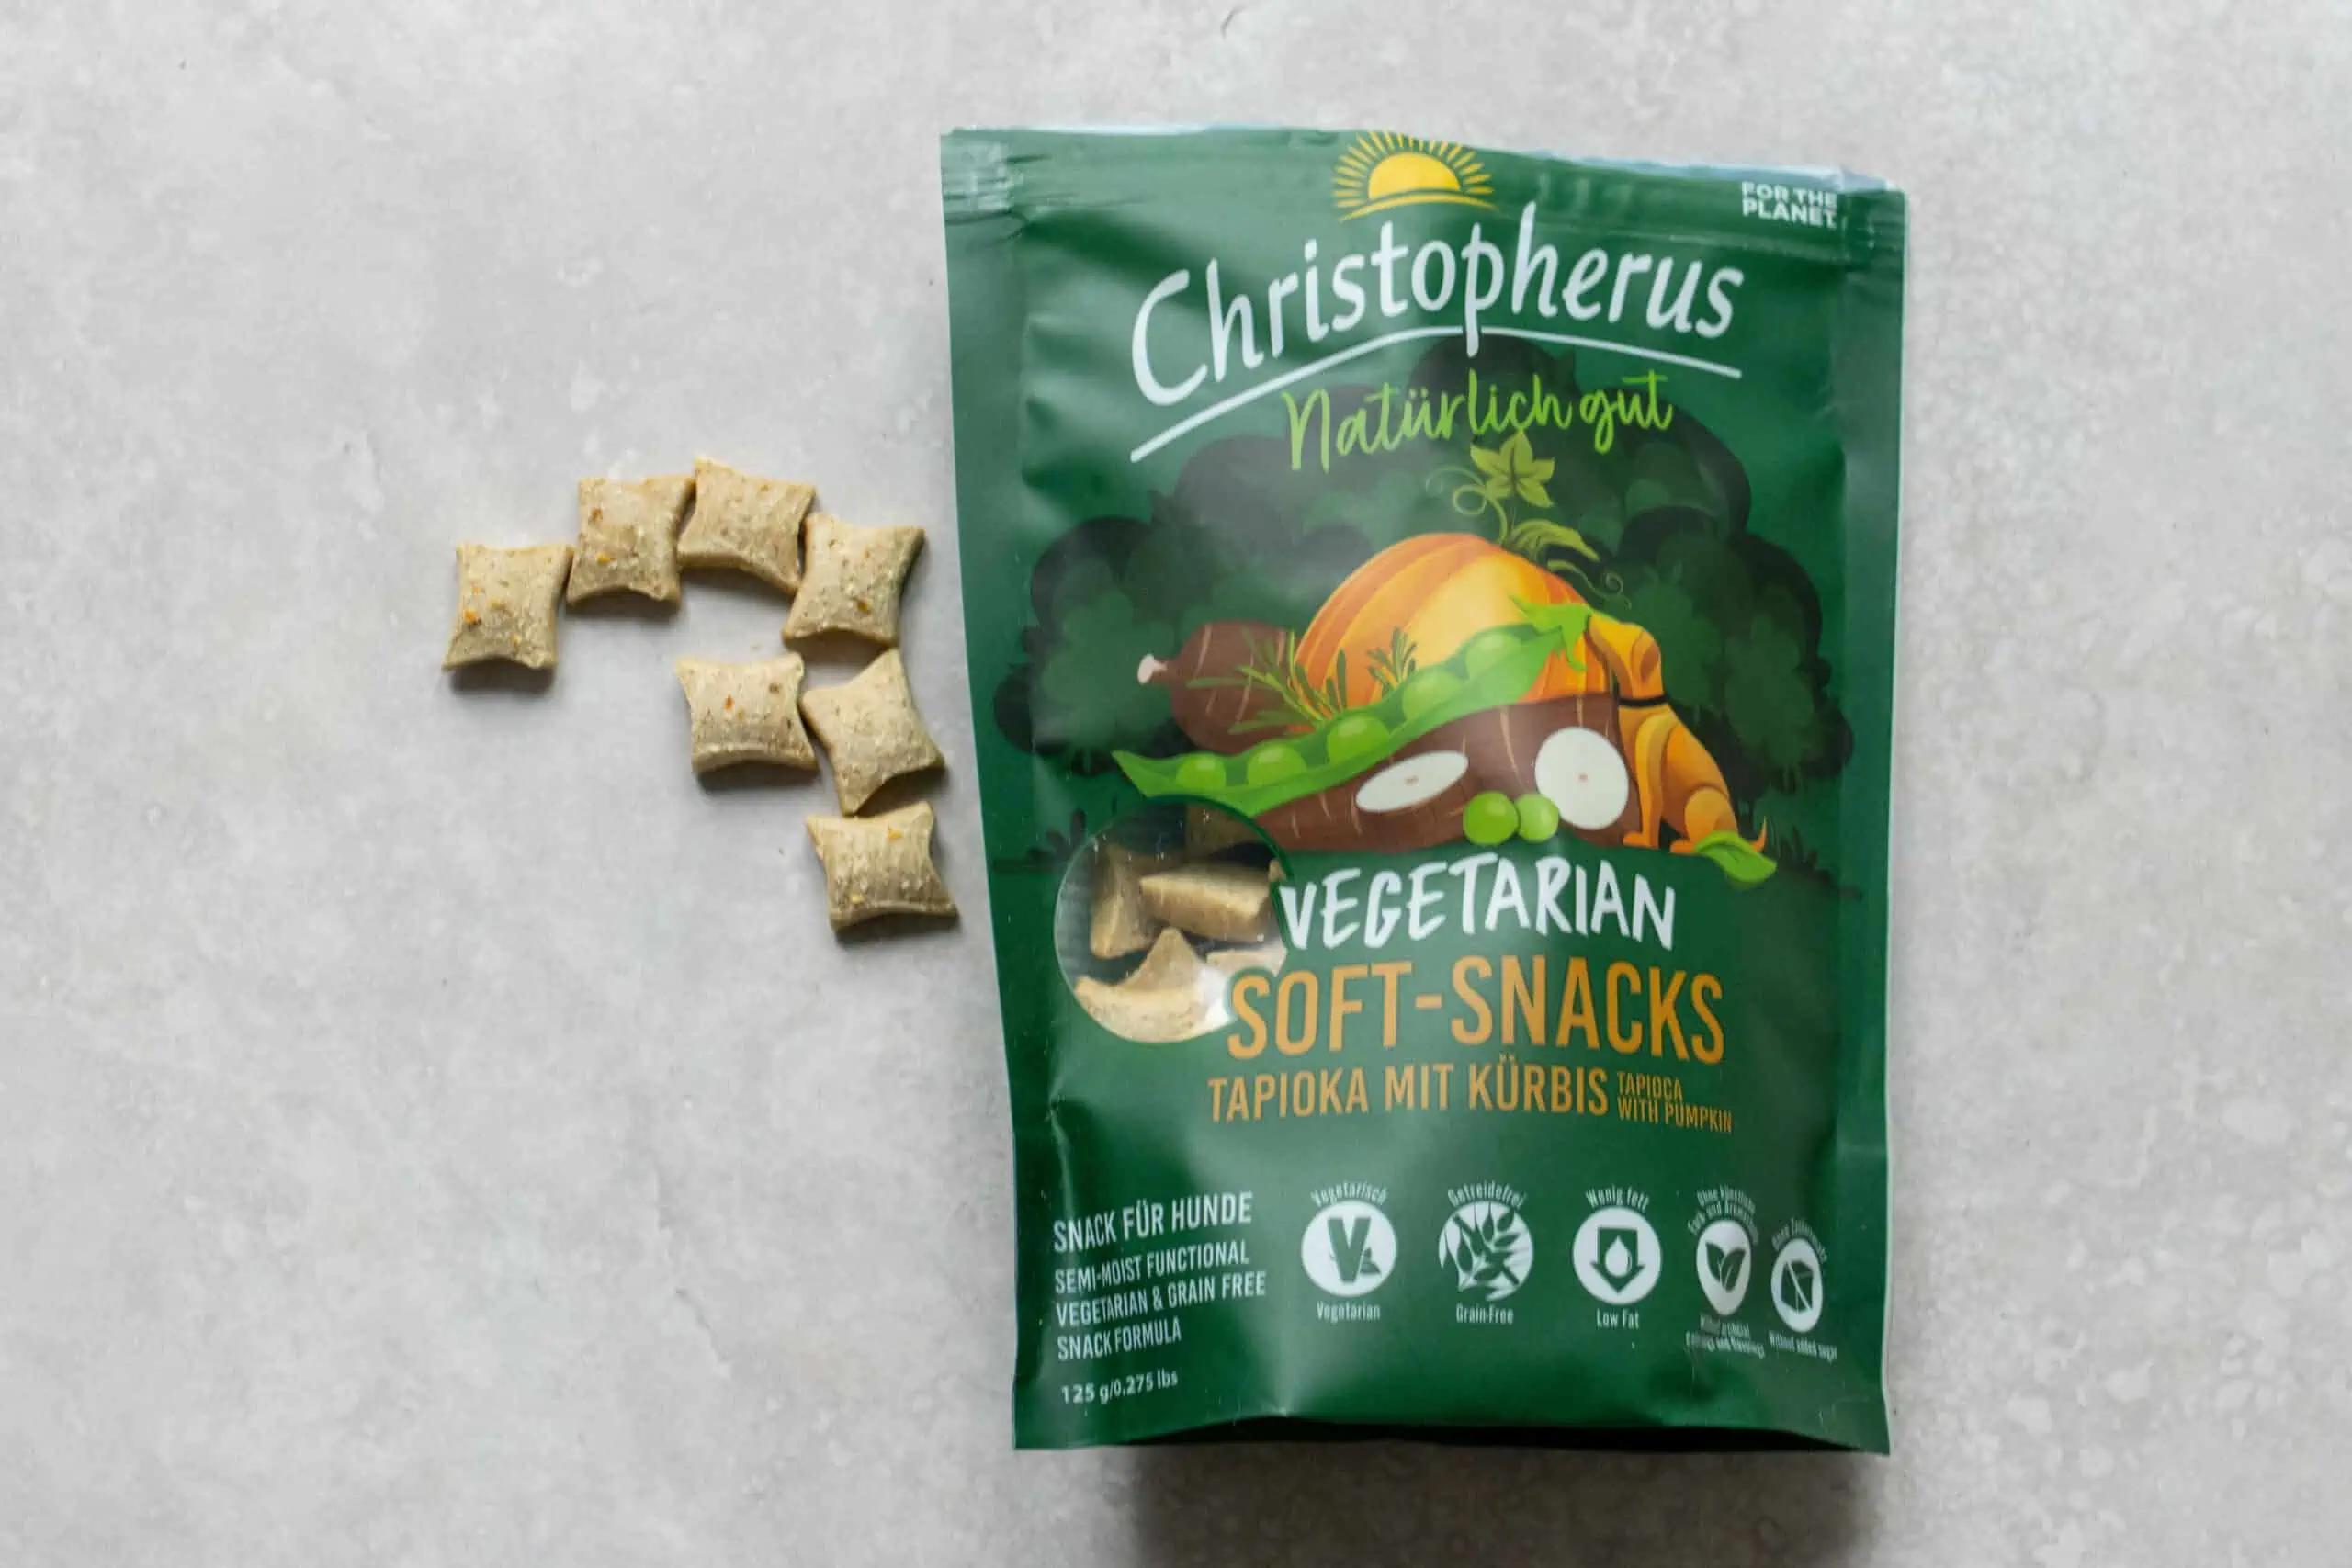 Christopherus Vegetarian Soft-Snacks Erfahrungen